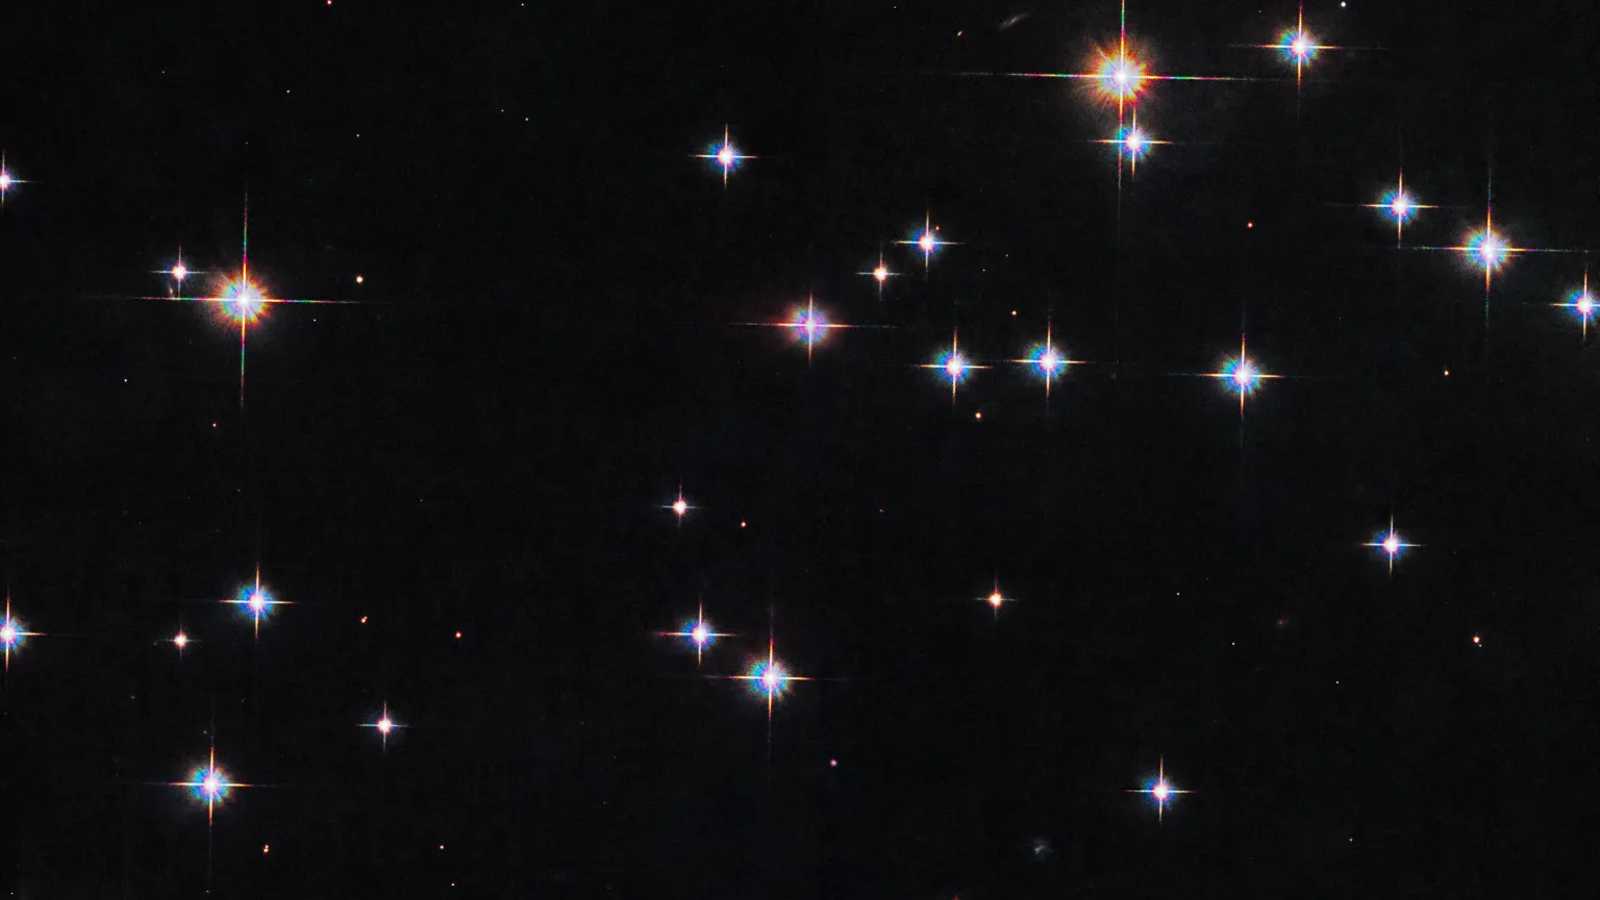 Estrelas brilhantes do aglomerado Messier 67 (M67), também conhecido como NGC 2682, estão dispostas nesta imagem. M67 é uma coleção de mais de 500 estrelas que estão ligadas gravitacionalmente, em um aglomerado aberto. Os aglomerados abertos são geralmente bastante jovens, mas M67 é um dos mais antigos conhecidos, com aproximadamente 4 bilhões de anos, quase a mesma idade do nosso Sol. M67 também é incomum em sua localização, pois está há quase 1,5 mil anos-luz acima do plano da Via Láctea. Para encontrar M67 no céu, basta traçar uma linha imaginária entre Regulus, a principal estrela da Constelação de Leão, e Procyon, a estrela Alfa da Constelação do Cão Menor